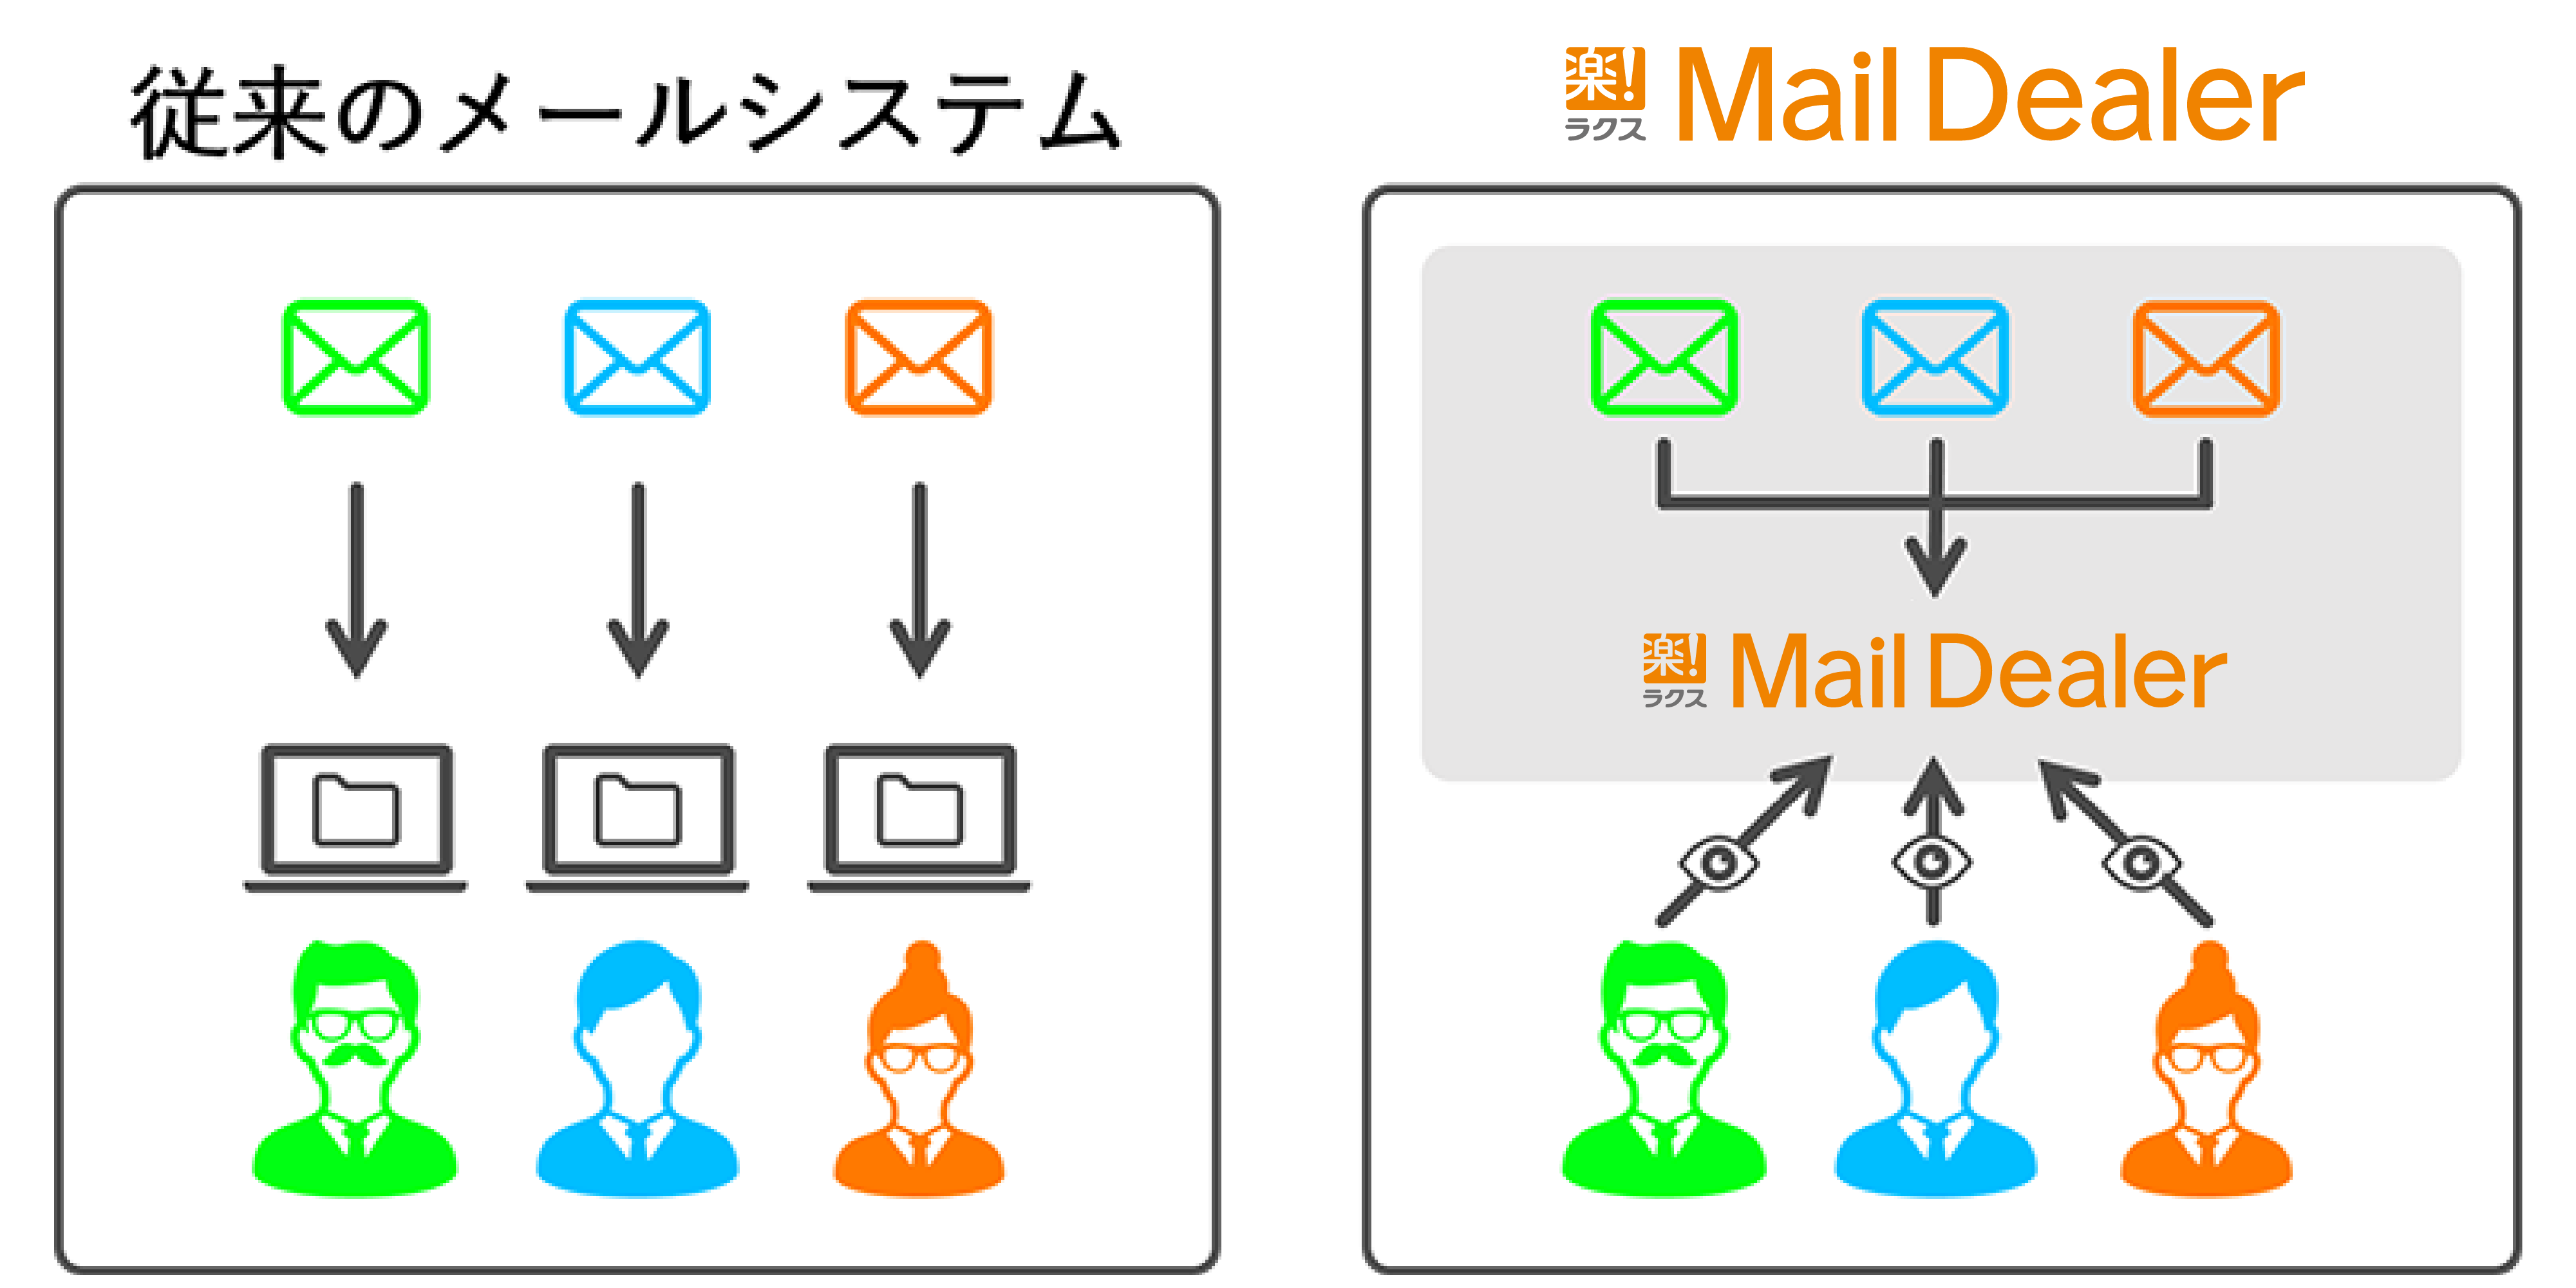 従来のメールシステムとメールディーラーの違い